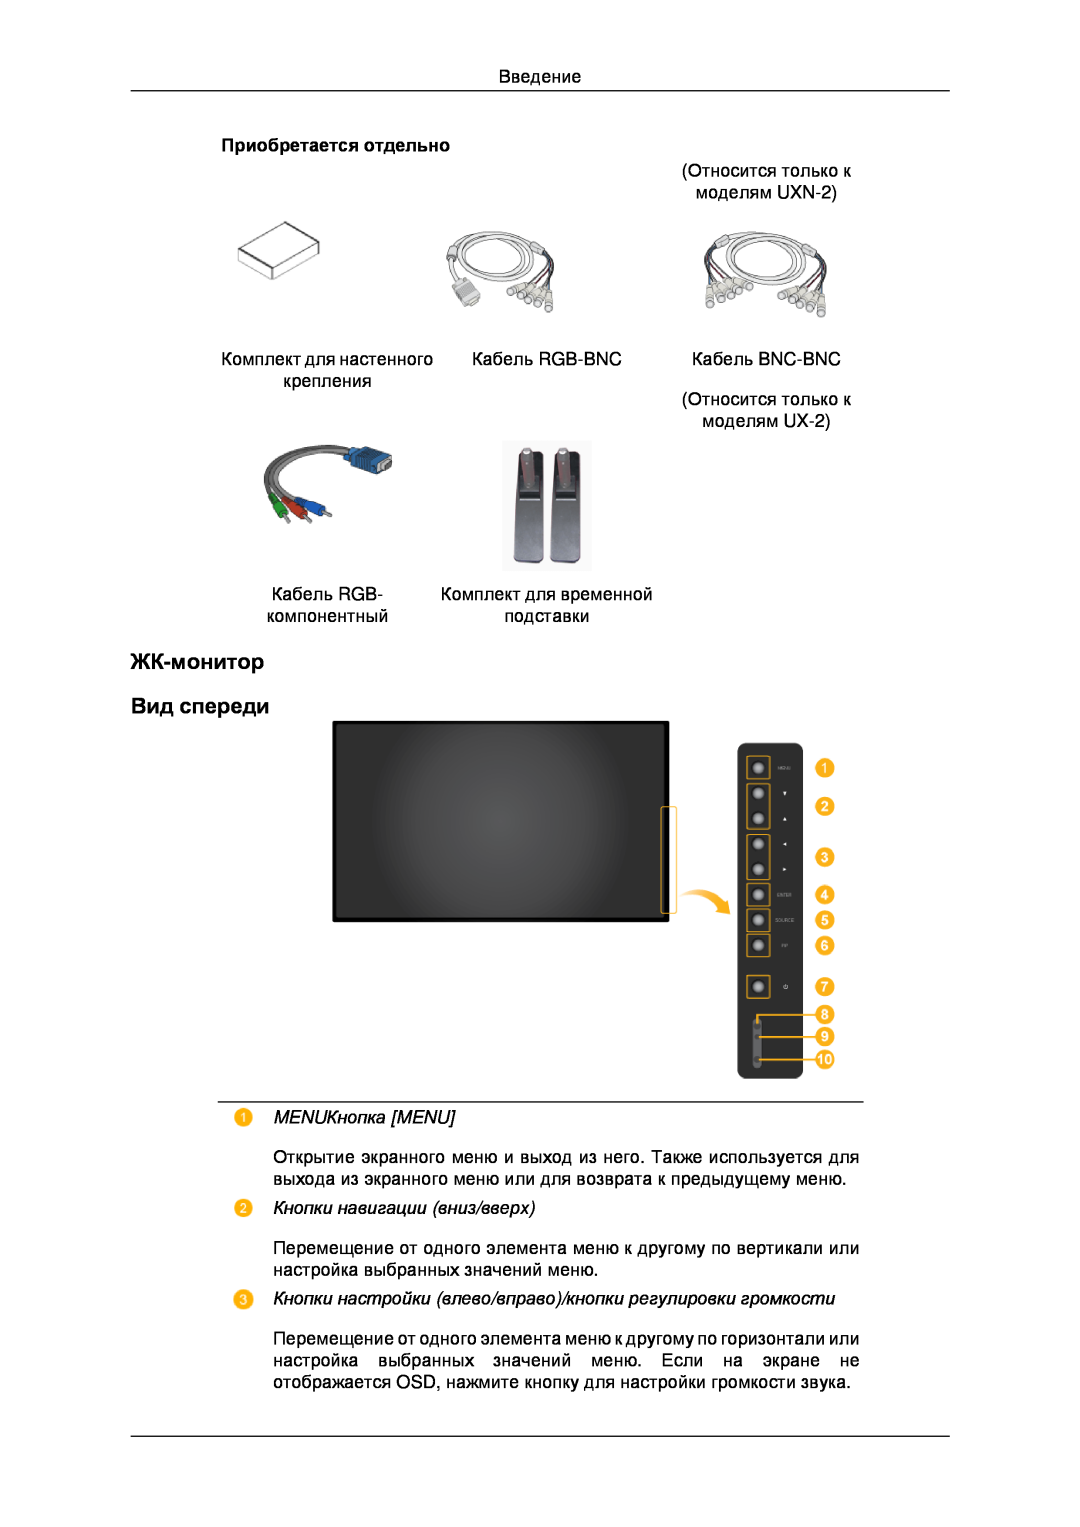 Samsung LH40MRTLBC/EN manual ЖК-монитор Вид спереди, MENUКнопка MENU, Кнопки навигации вниз/вверх, Приобретается отдельно 